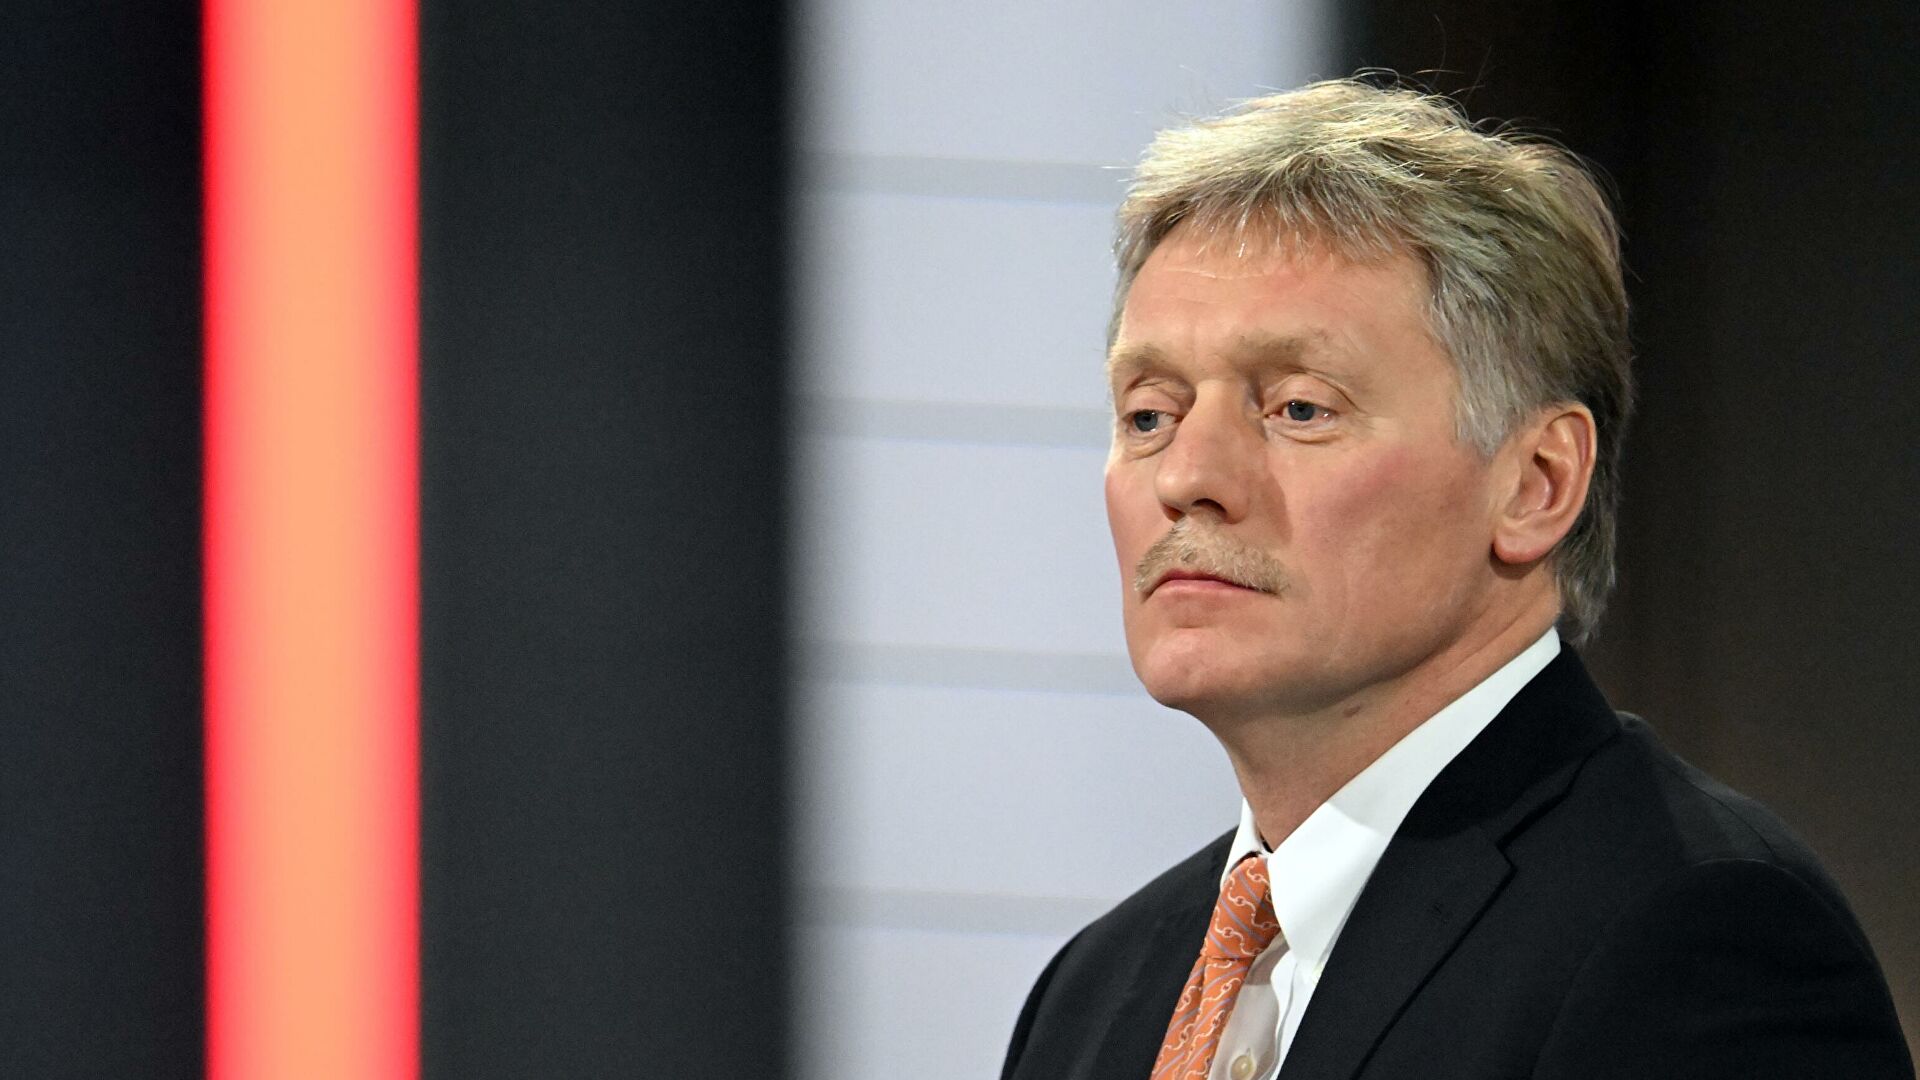 Кремль обратил внимание на заявление Зеленского о готовности к переговорам - Песков